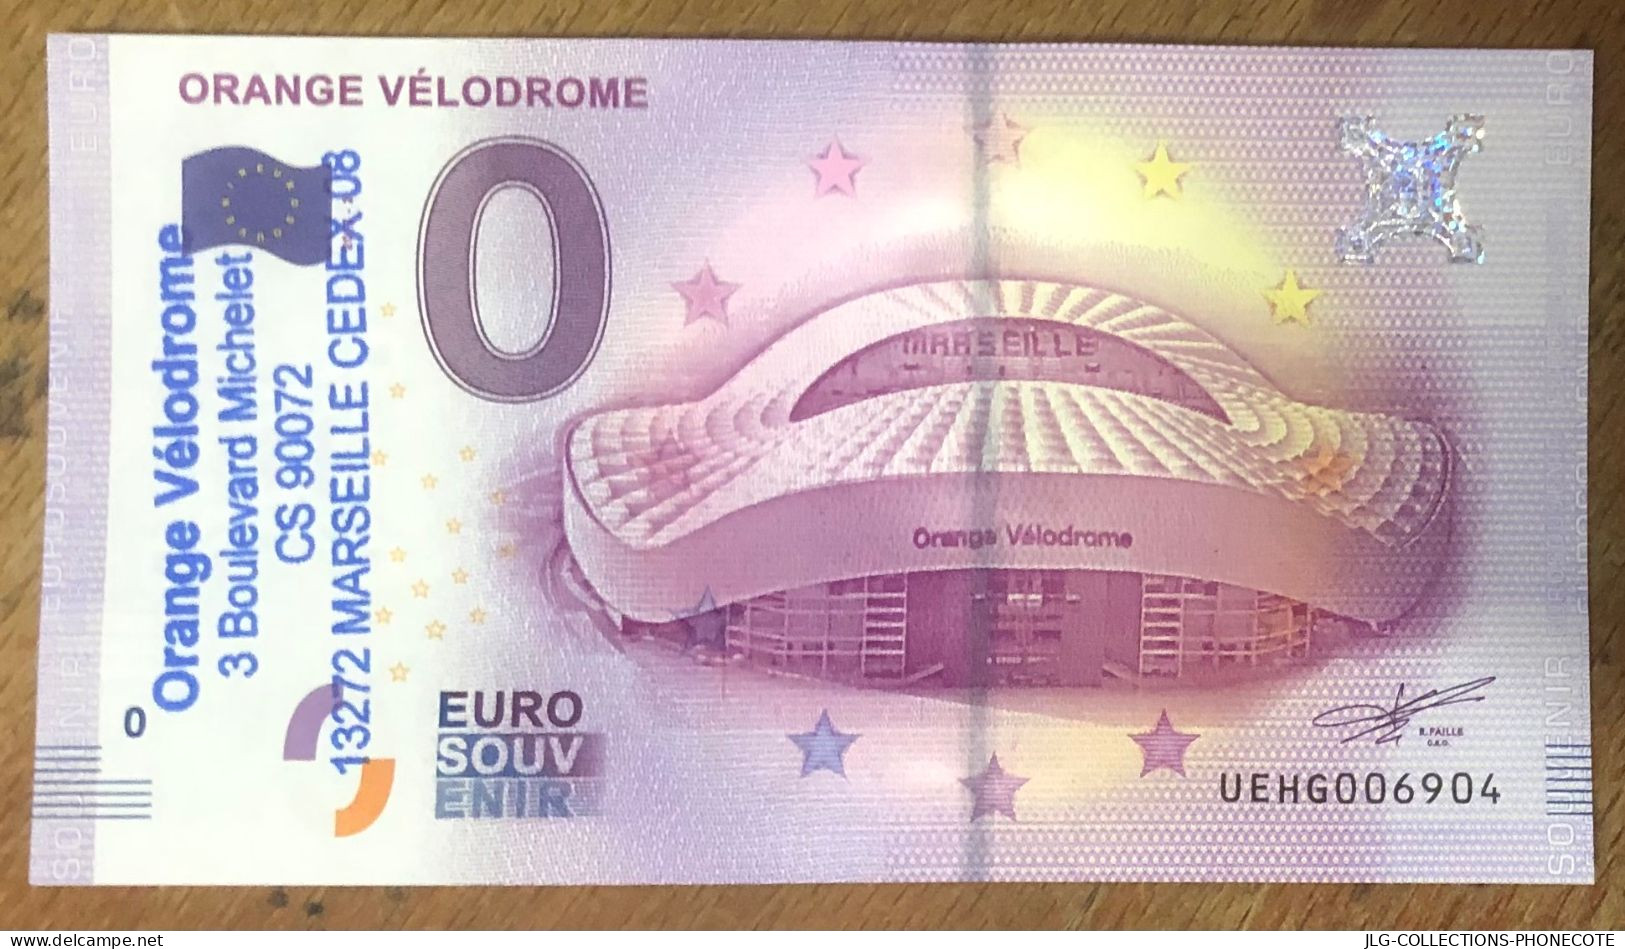 2017 BILLET 0 EURO SOUVENIR ORANGE VÉLODROME + TAMPON EURO SCHEIN BANKNOTE PAPER MONEY BANK PAPIER MONNAIE - Essais Privés / Non-officiels